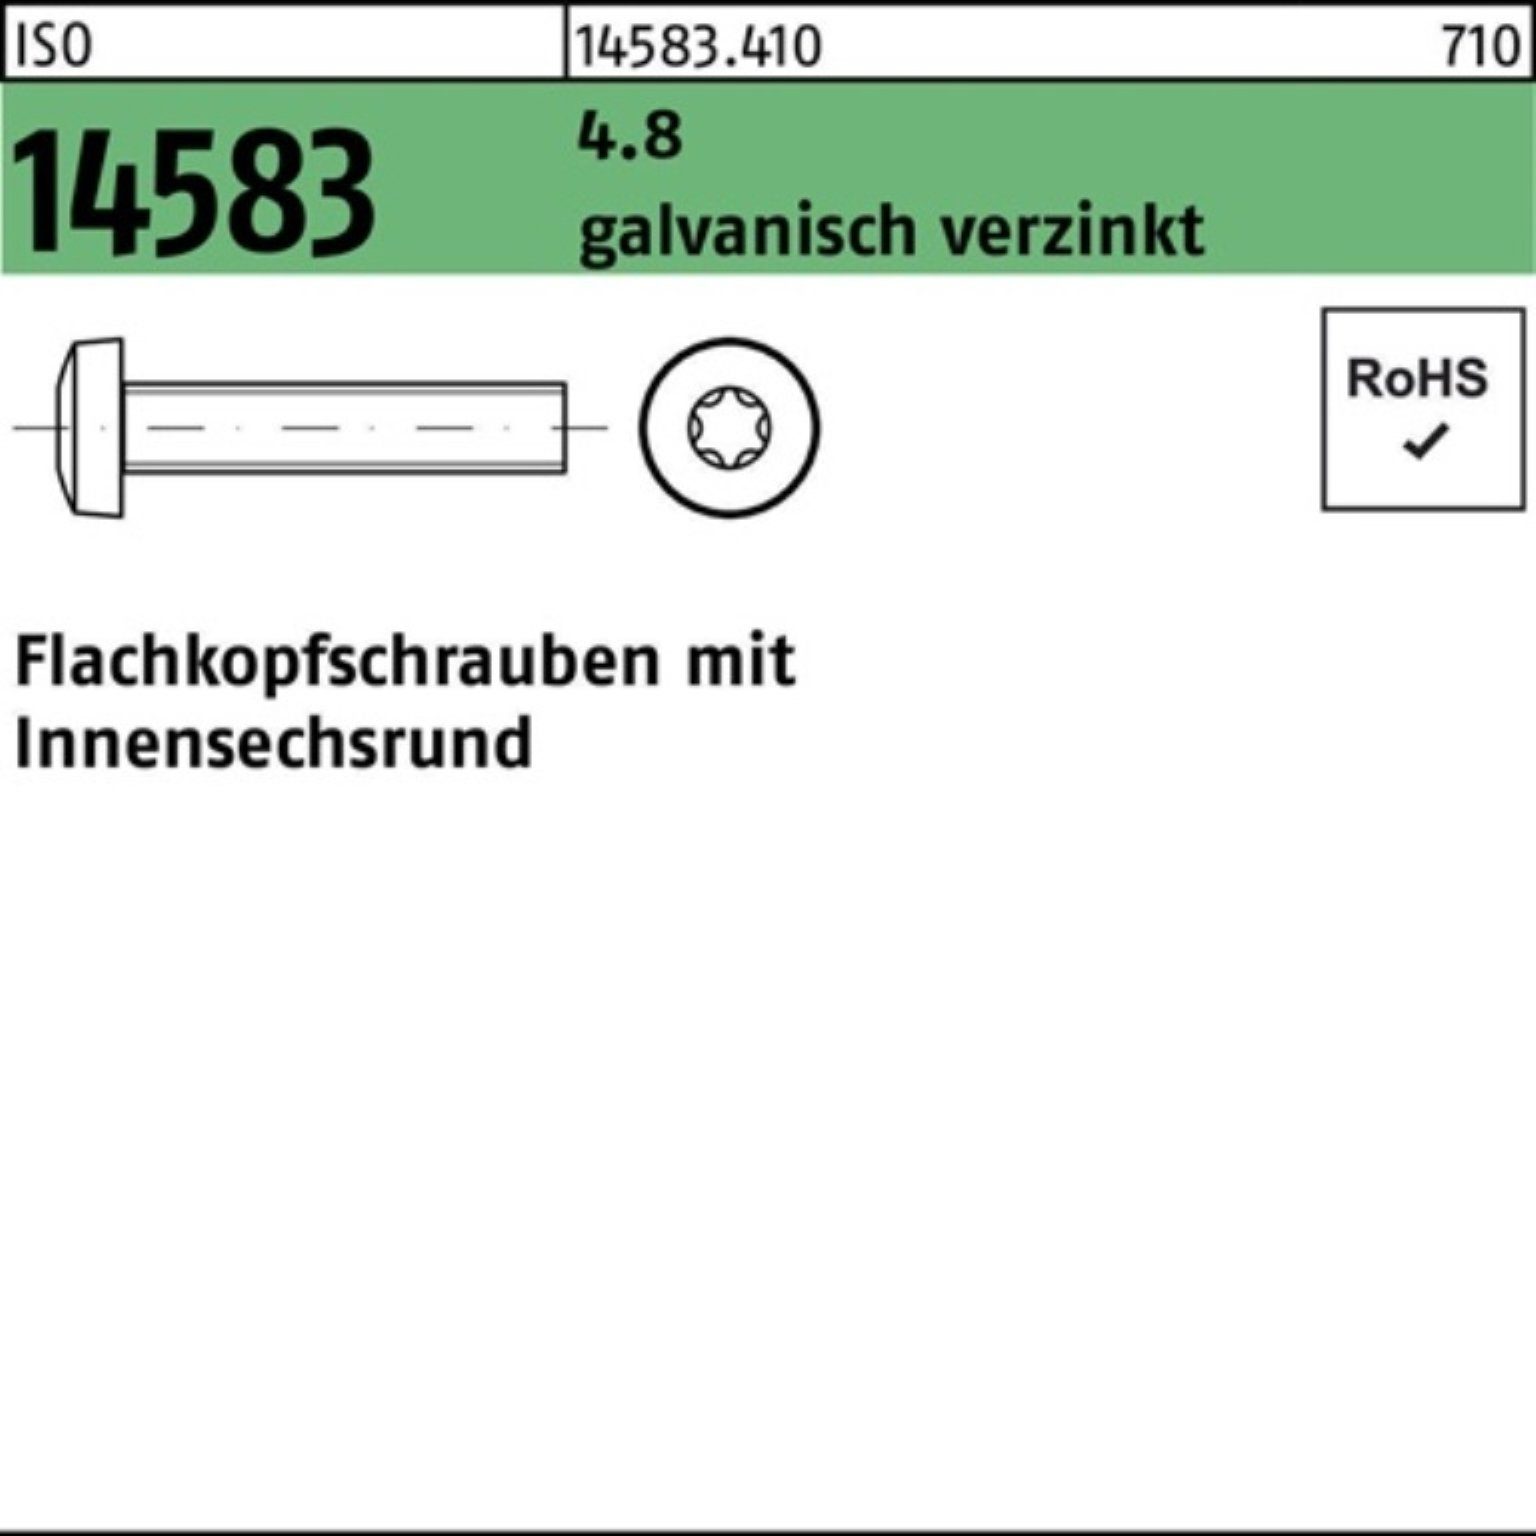 Flachkopfschraube Schraube 200er 200St. 4.8 ISR ISO Reyher Pack M3x4 galv.verz. 14583